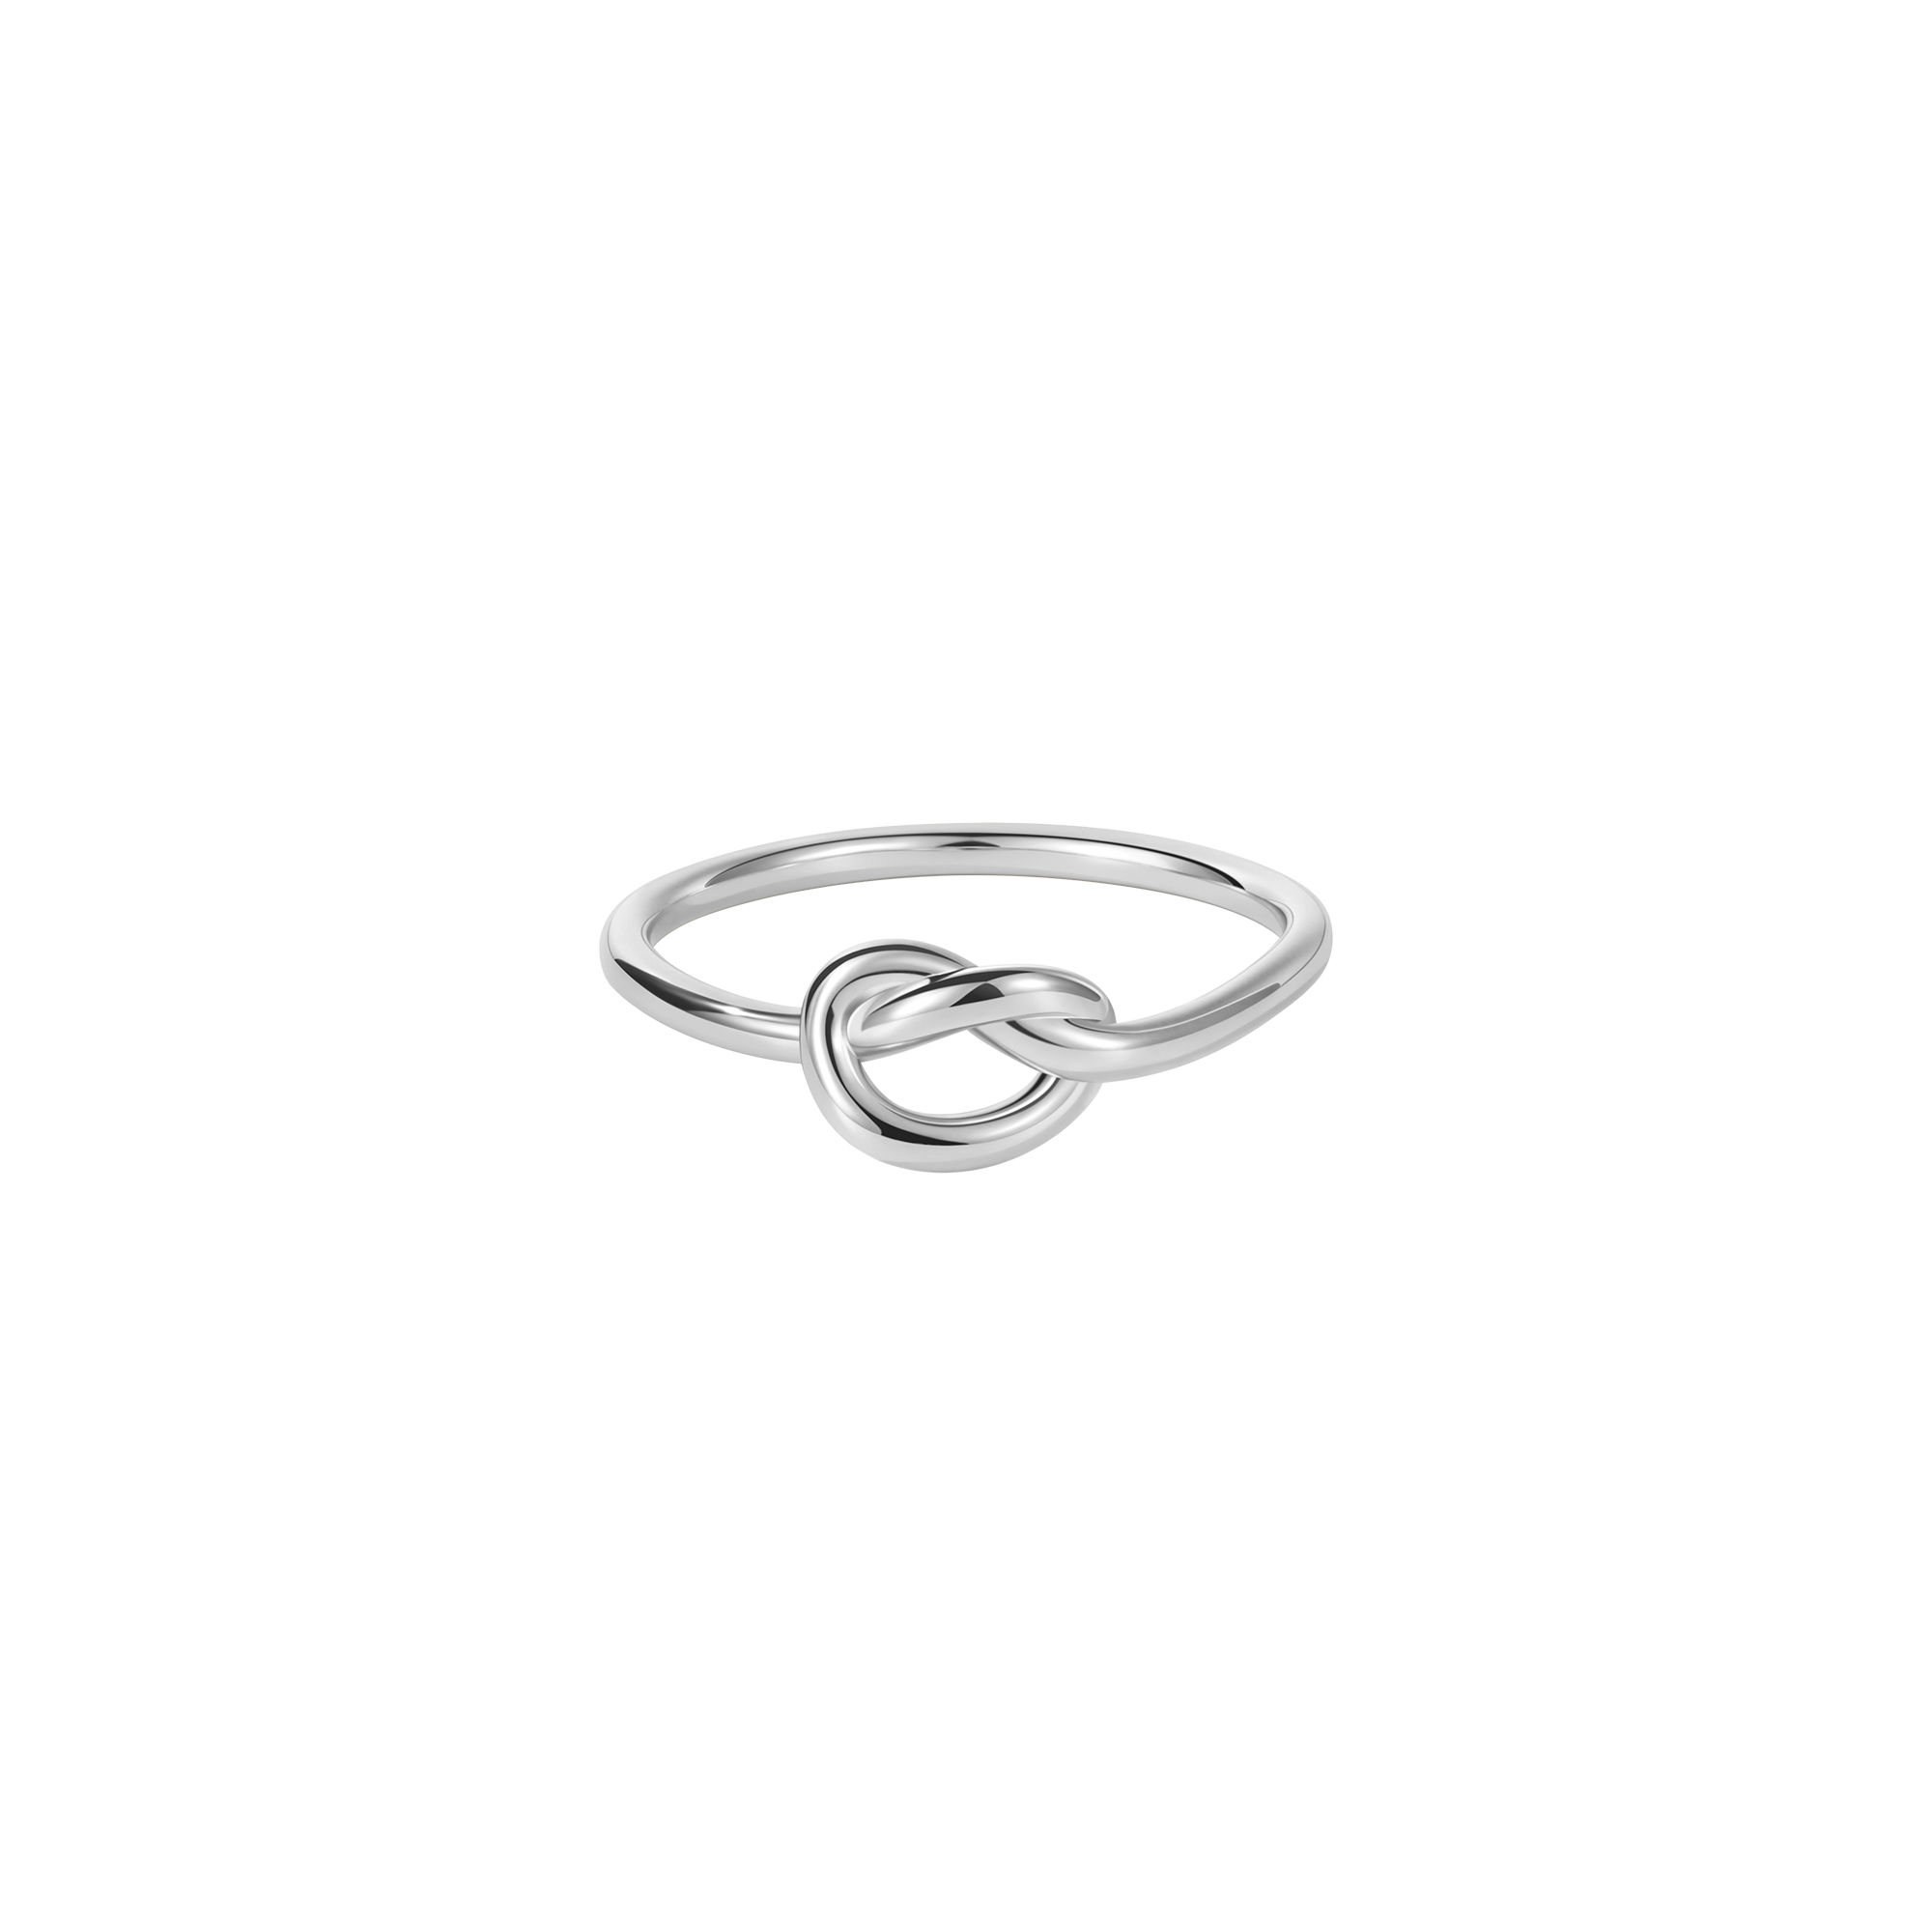 Celtic Ring